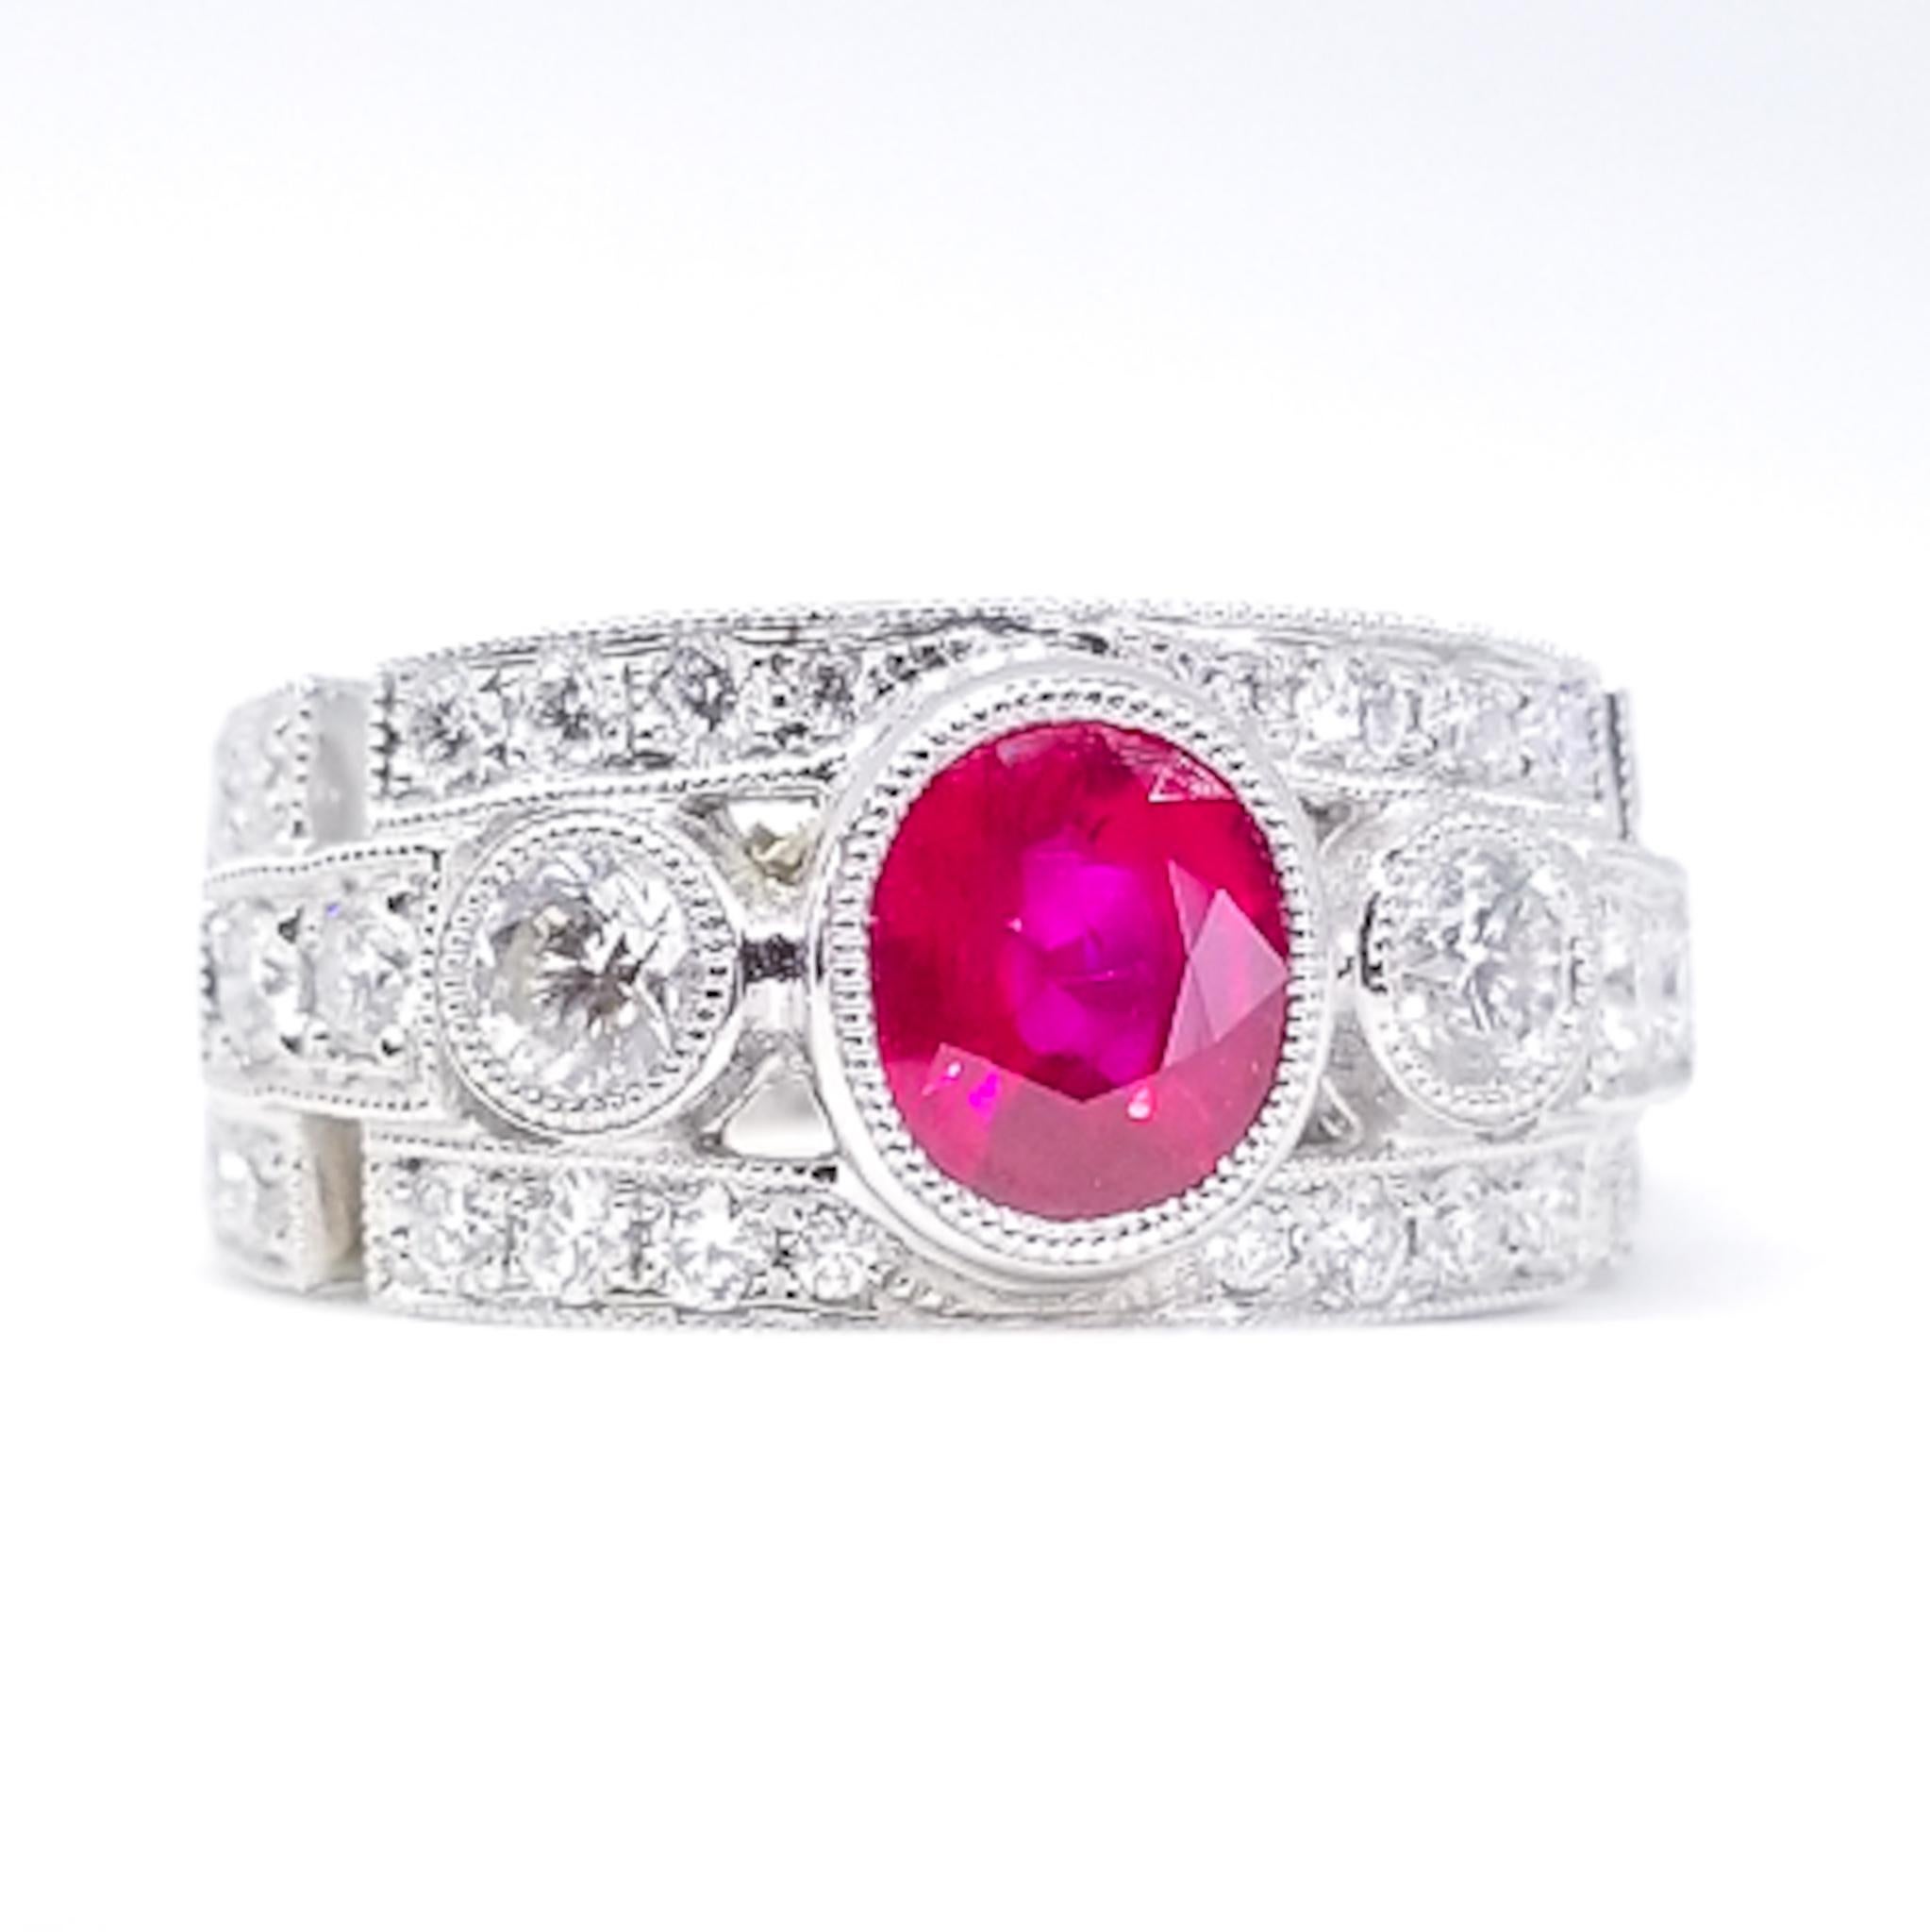 Ein Art Deco inspirierter Verlobungs-, Jubiläums- oder Rechtshandring ist mit einem 1,52 Karat ovalen Rubin mit satter rot-rosa Farbsättigung besetzt. Der Stein in Edelsteinqualität ist tief in den Ring im Bandstil in einer schützenden Lünette aus